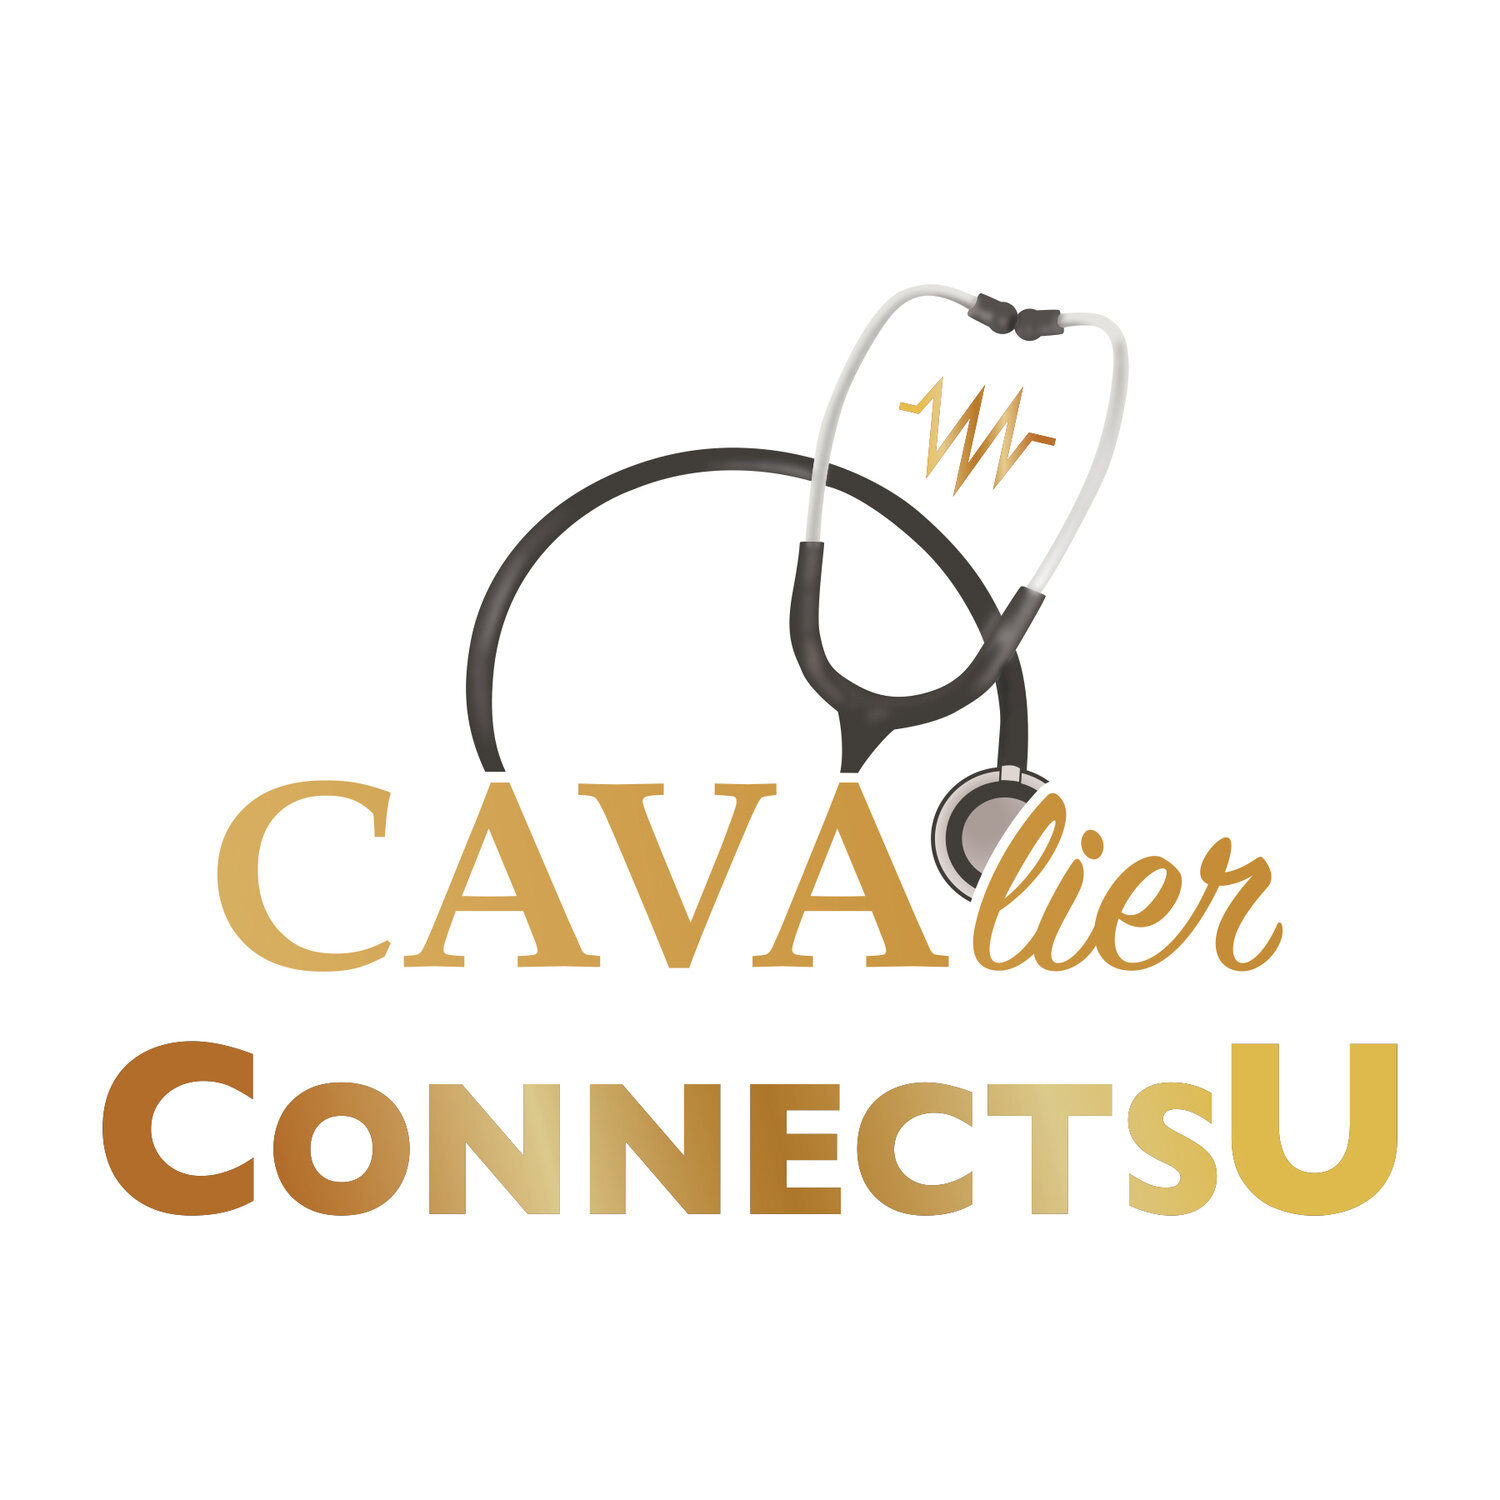 CAVAlier ConnectsU